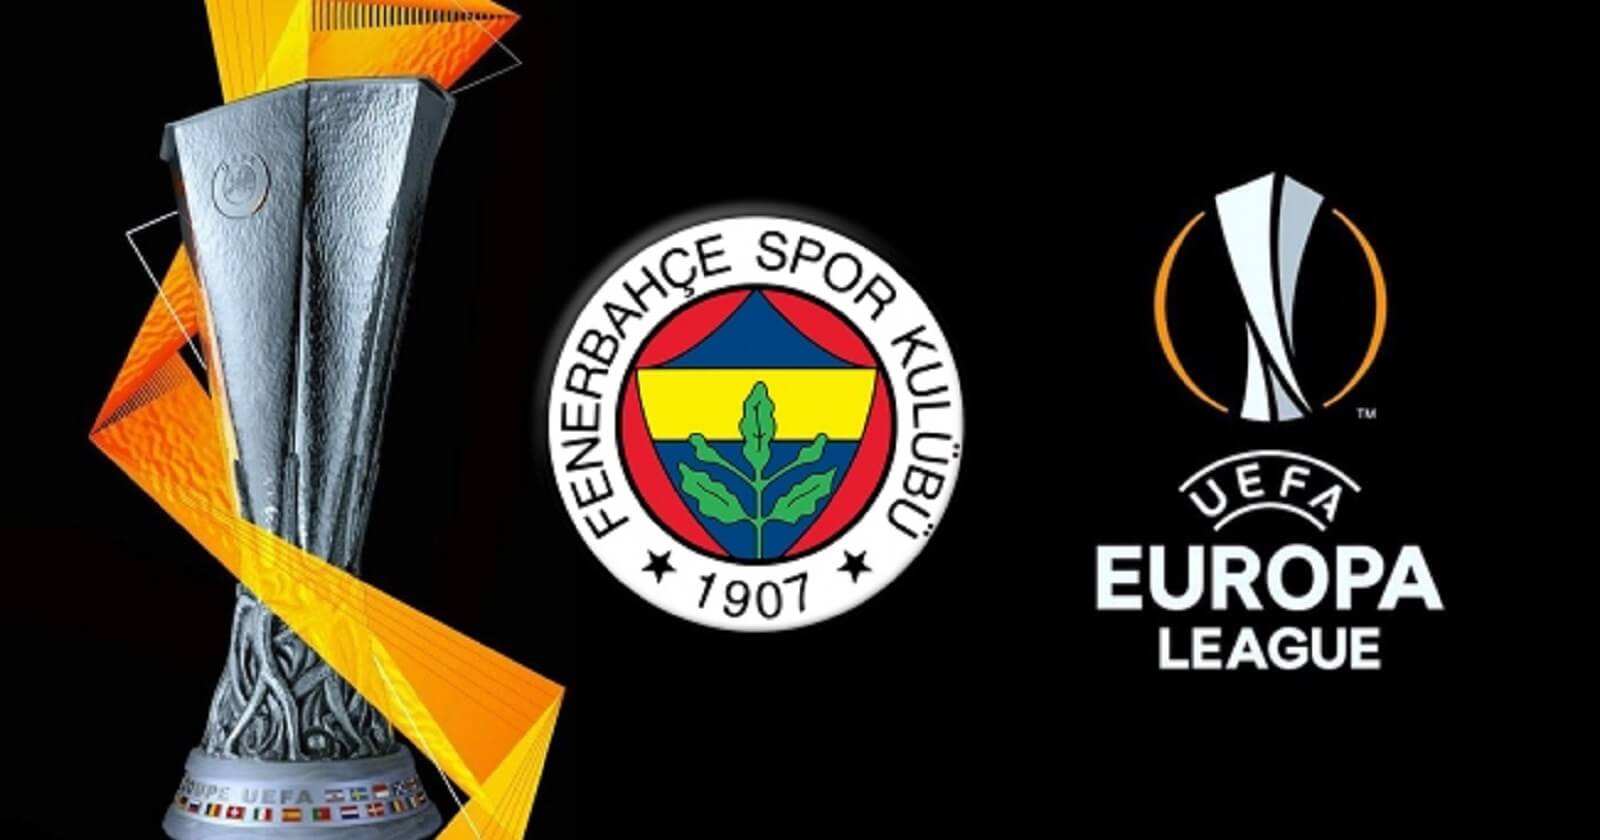 UEFAnin Karari Fenerbahcenin Isine Geldi UEFA'nın Kararı Fenerbahçe'nin İşine Geldi!